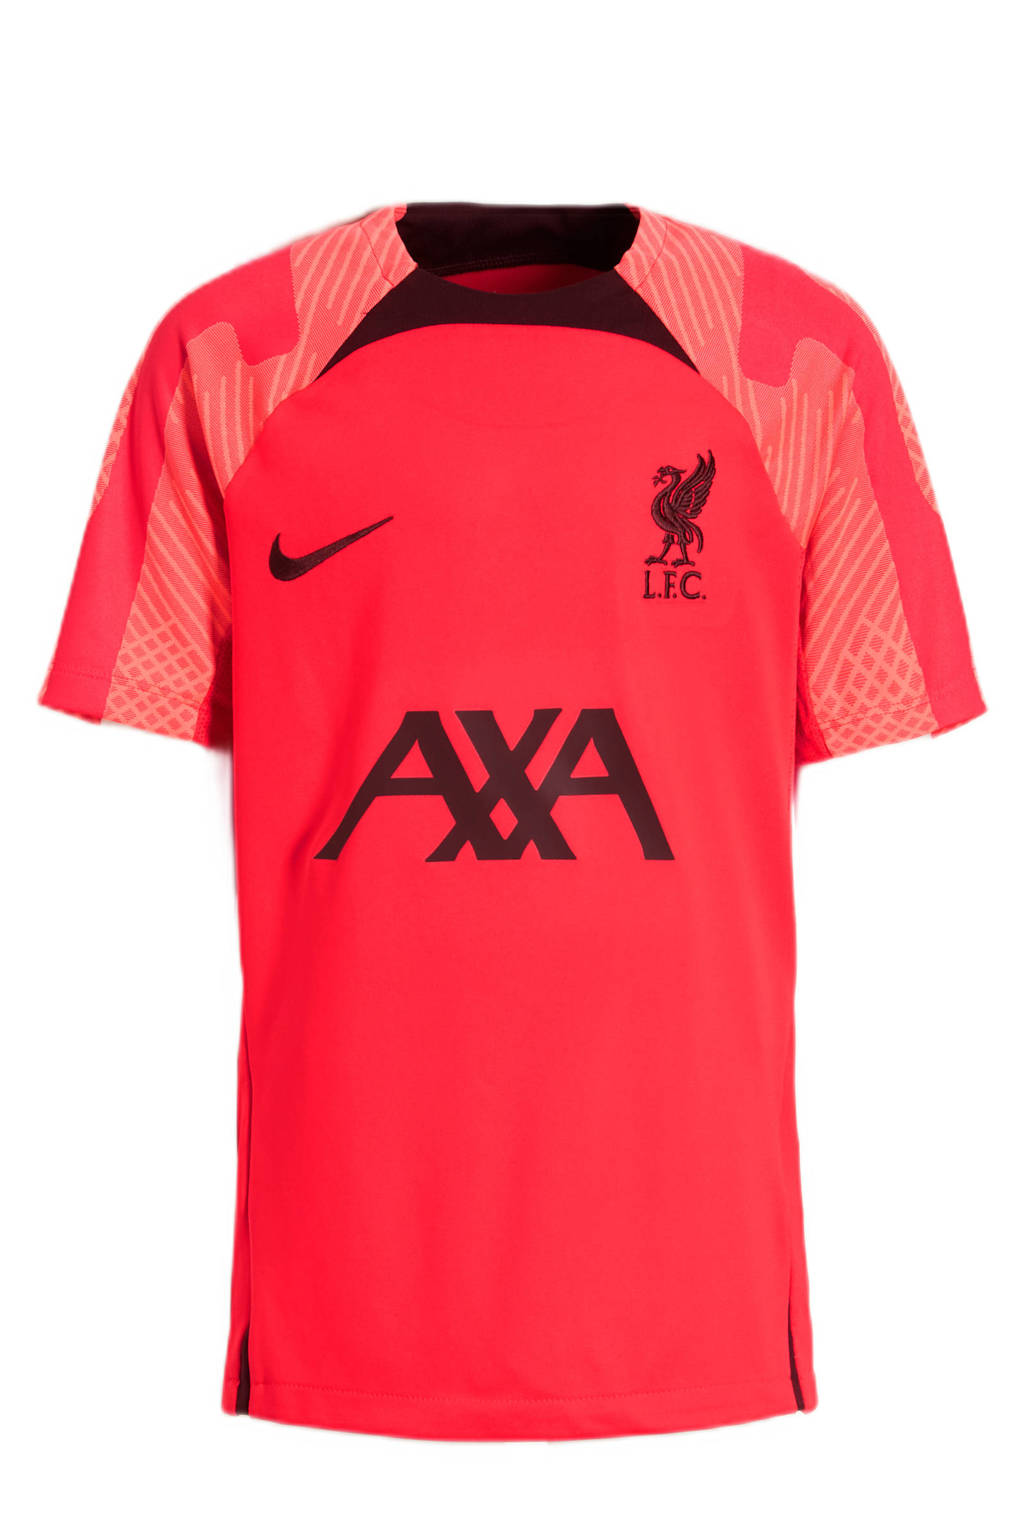 fragment Inademen keten Nike Junior Liverpool FC voetbalshirt rood/zwart | wehkamp